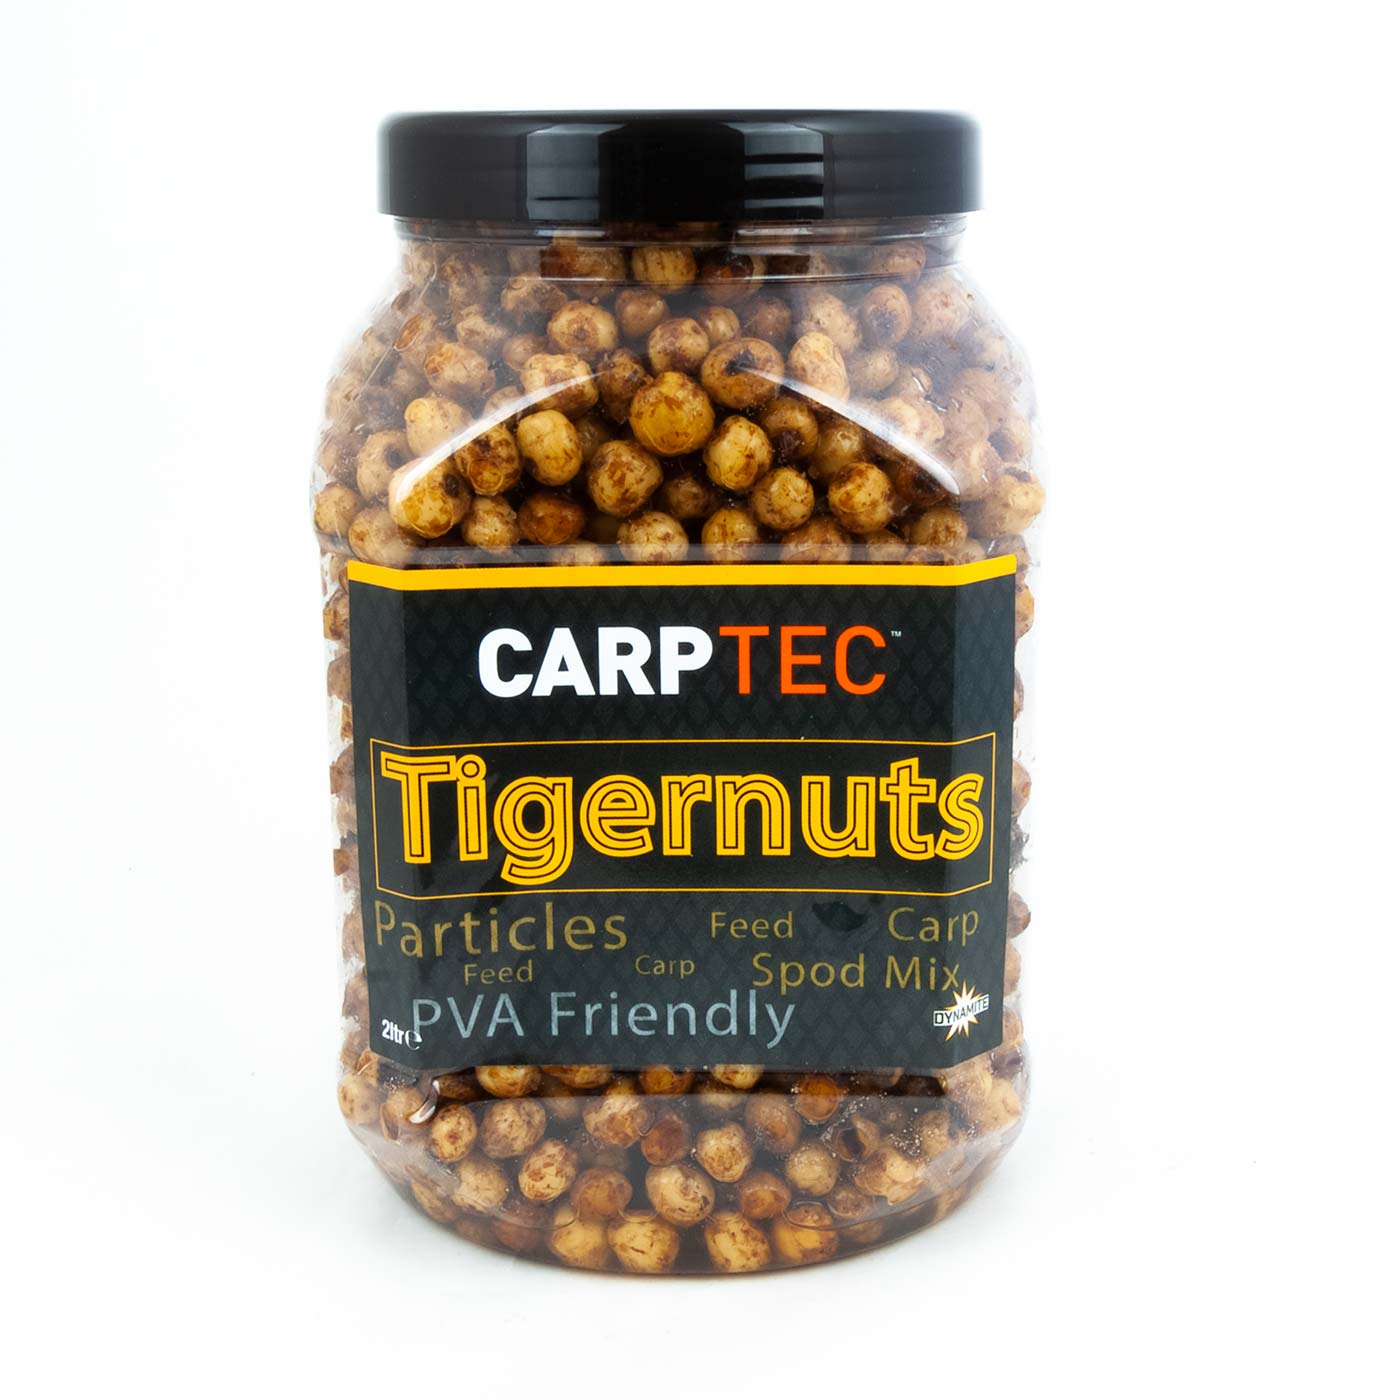 Carptec Particles - Tigernuts